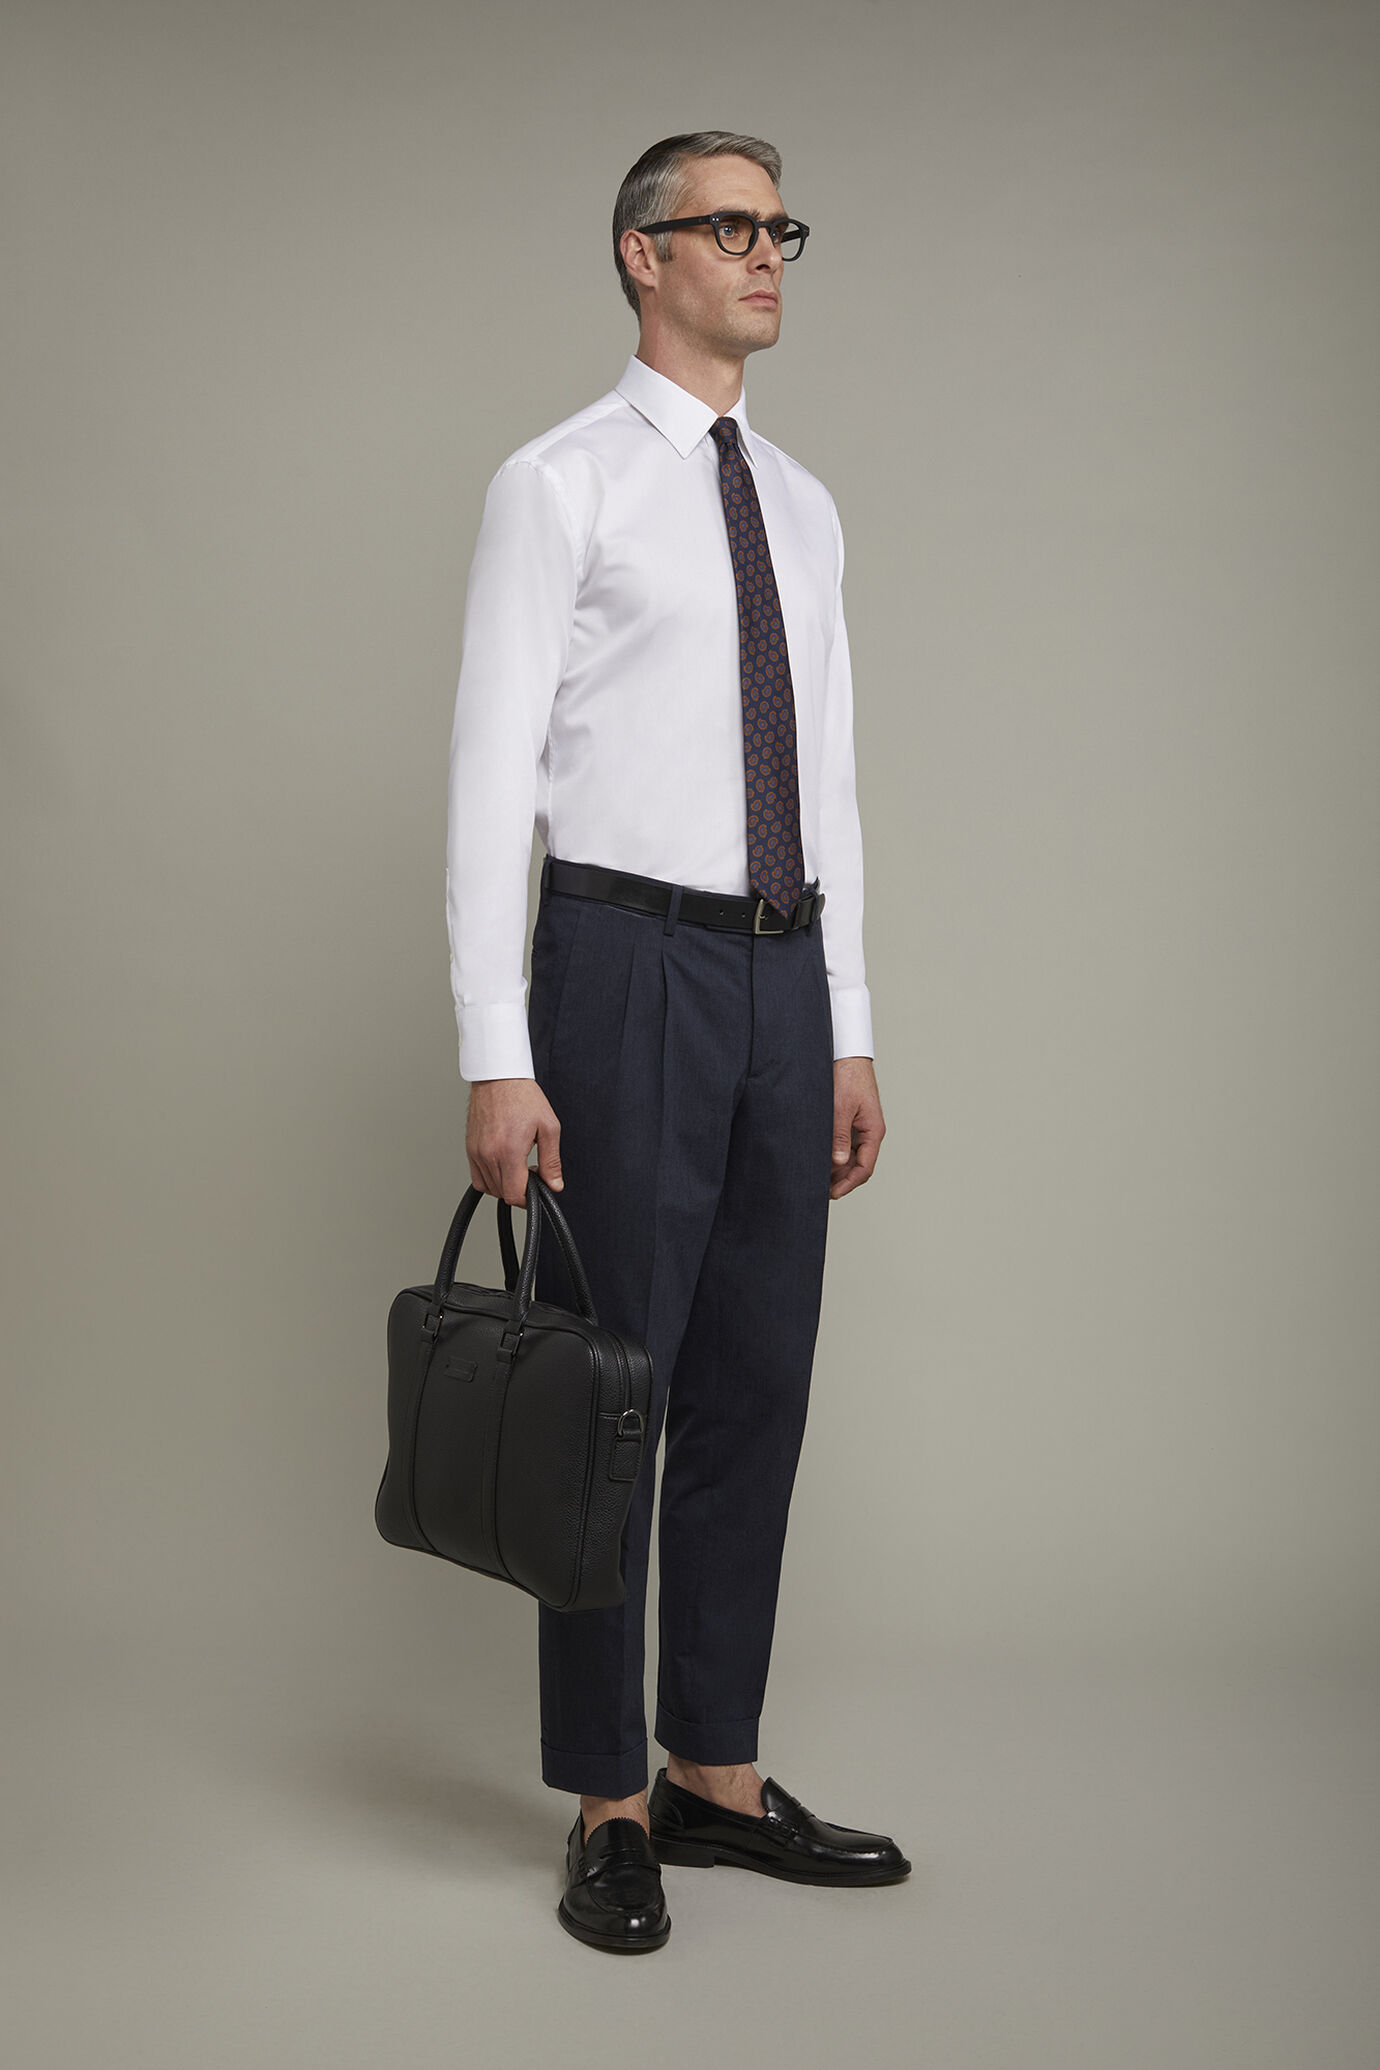 Men's shirt classic collar 100% cotton plain fabric regular fit image number 1